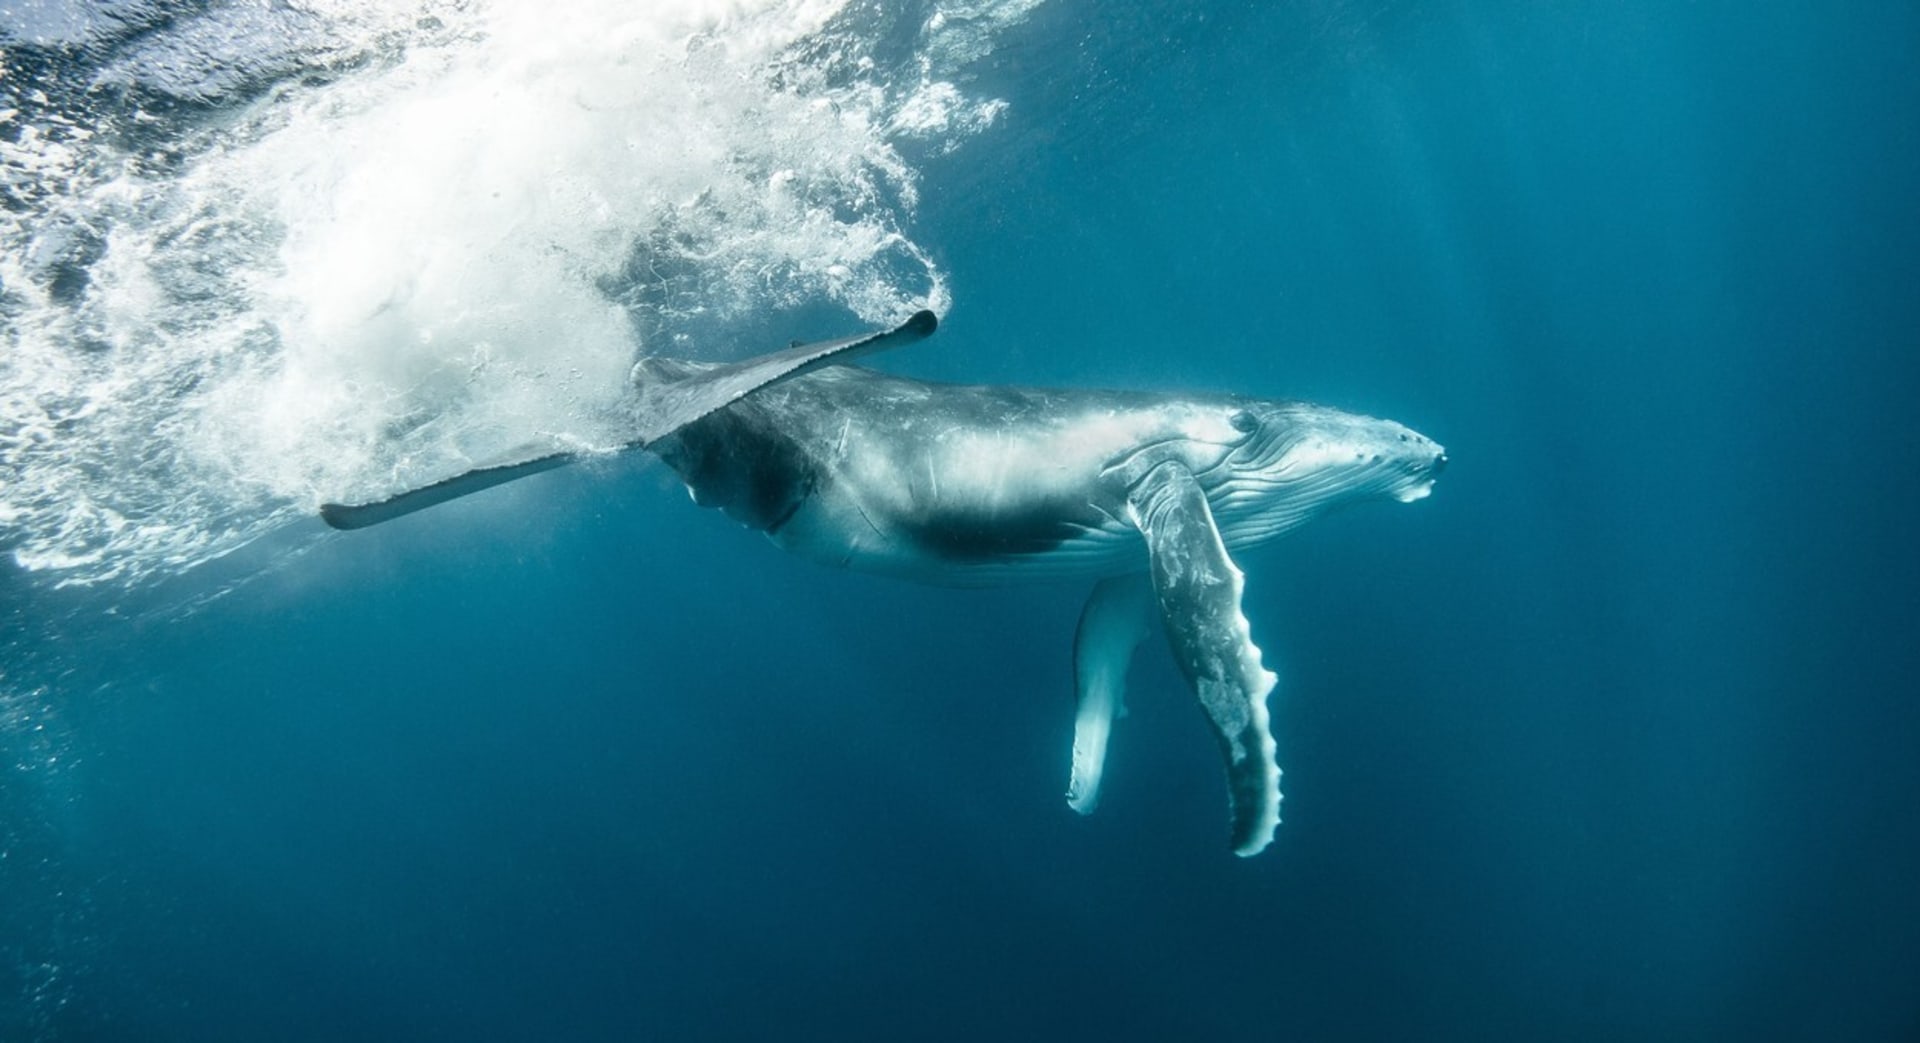 I dobrý úmysl zachránit velrybu se nakonec může vymstít